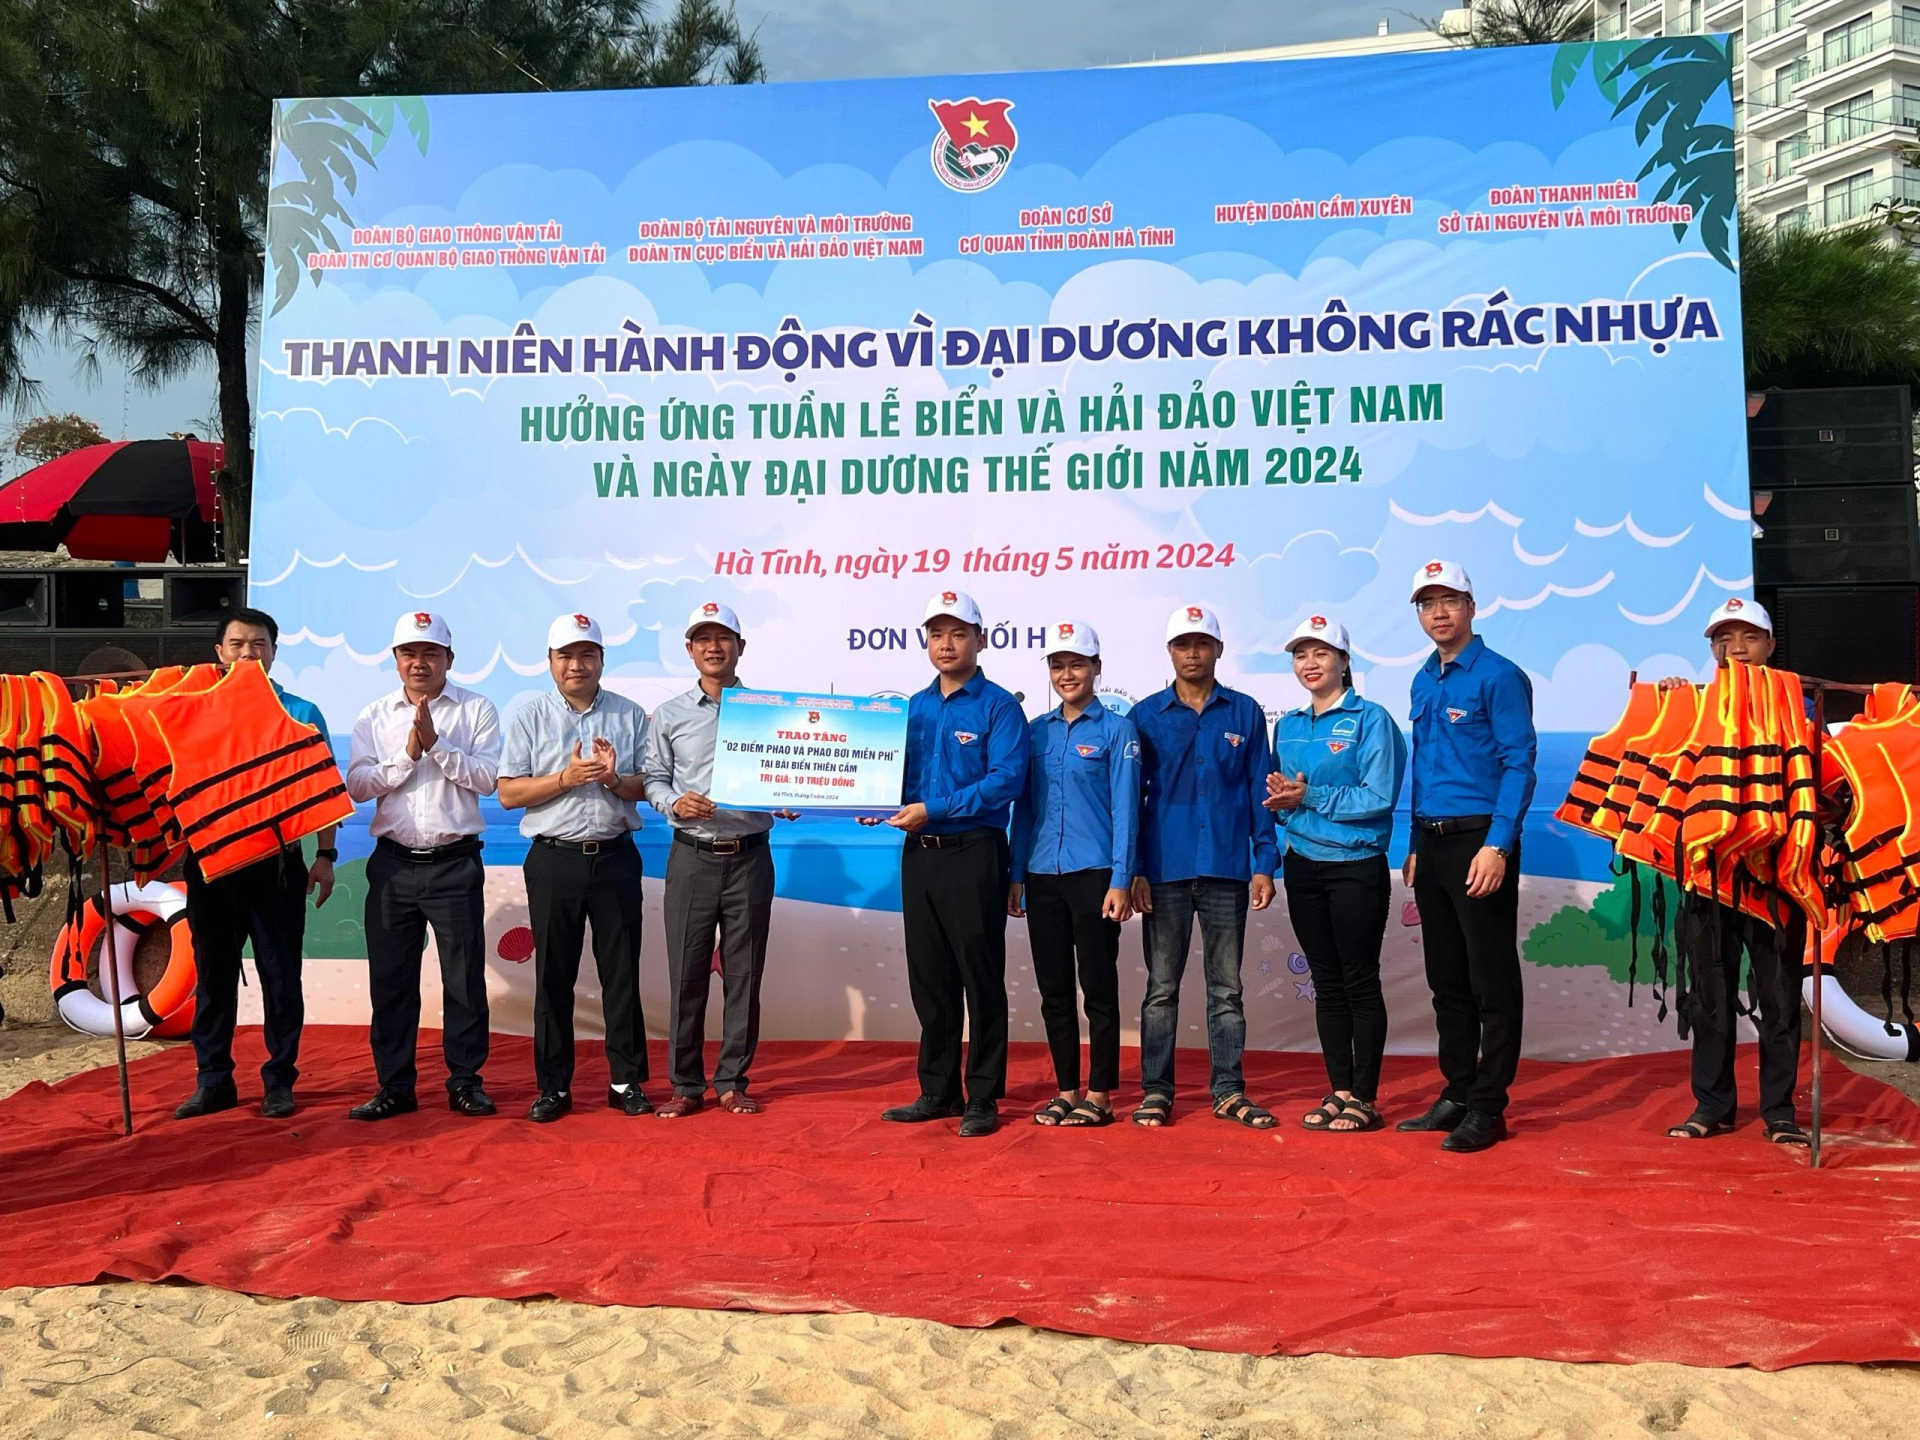 Đoàn thanh niên Cục Biển và Hải đảo Việt Nam: Ra quân làm sạch biển hưởng ứng Tuần lễ biển đảo Việt Nam 2024 - ảnh 2